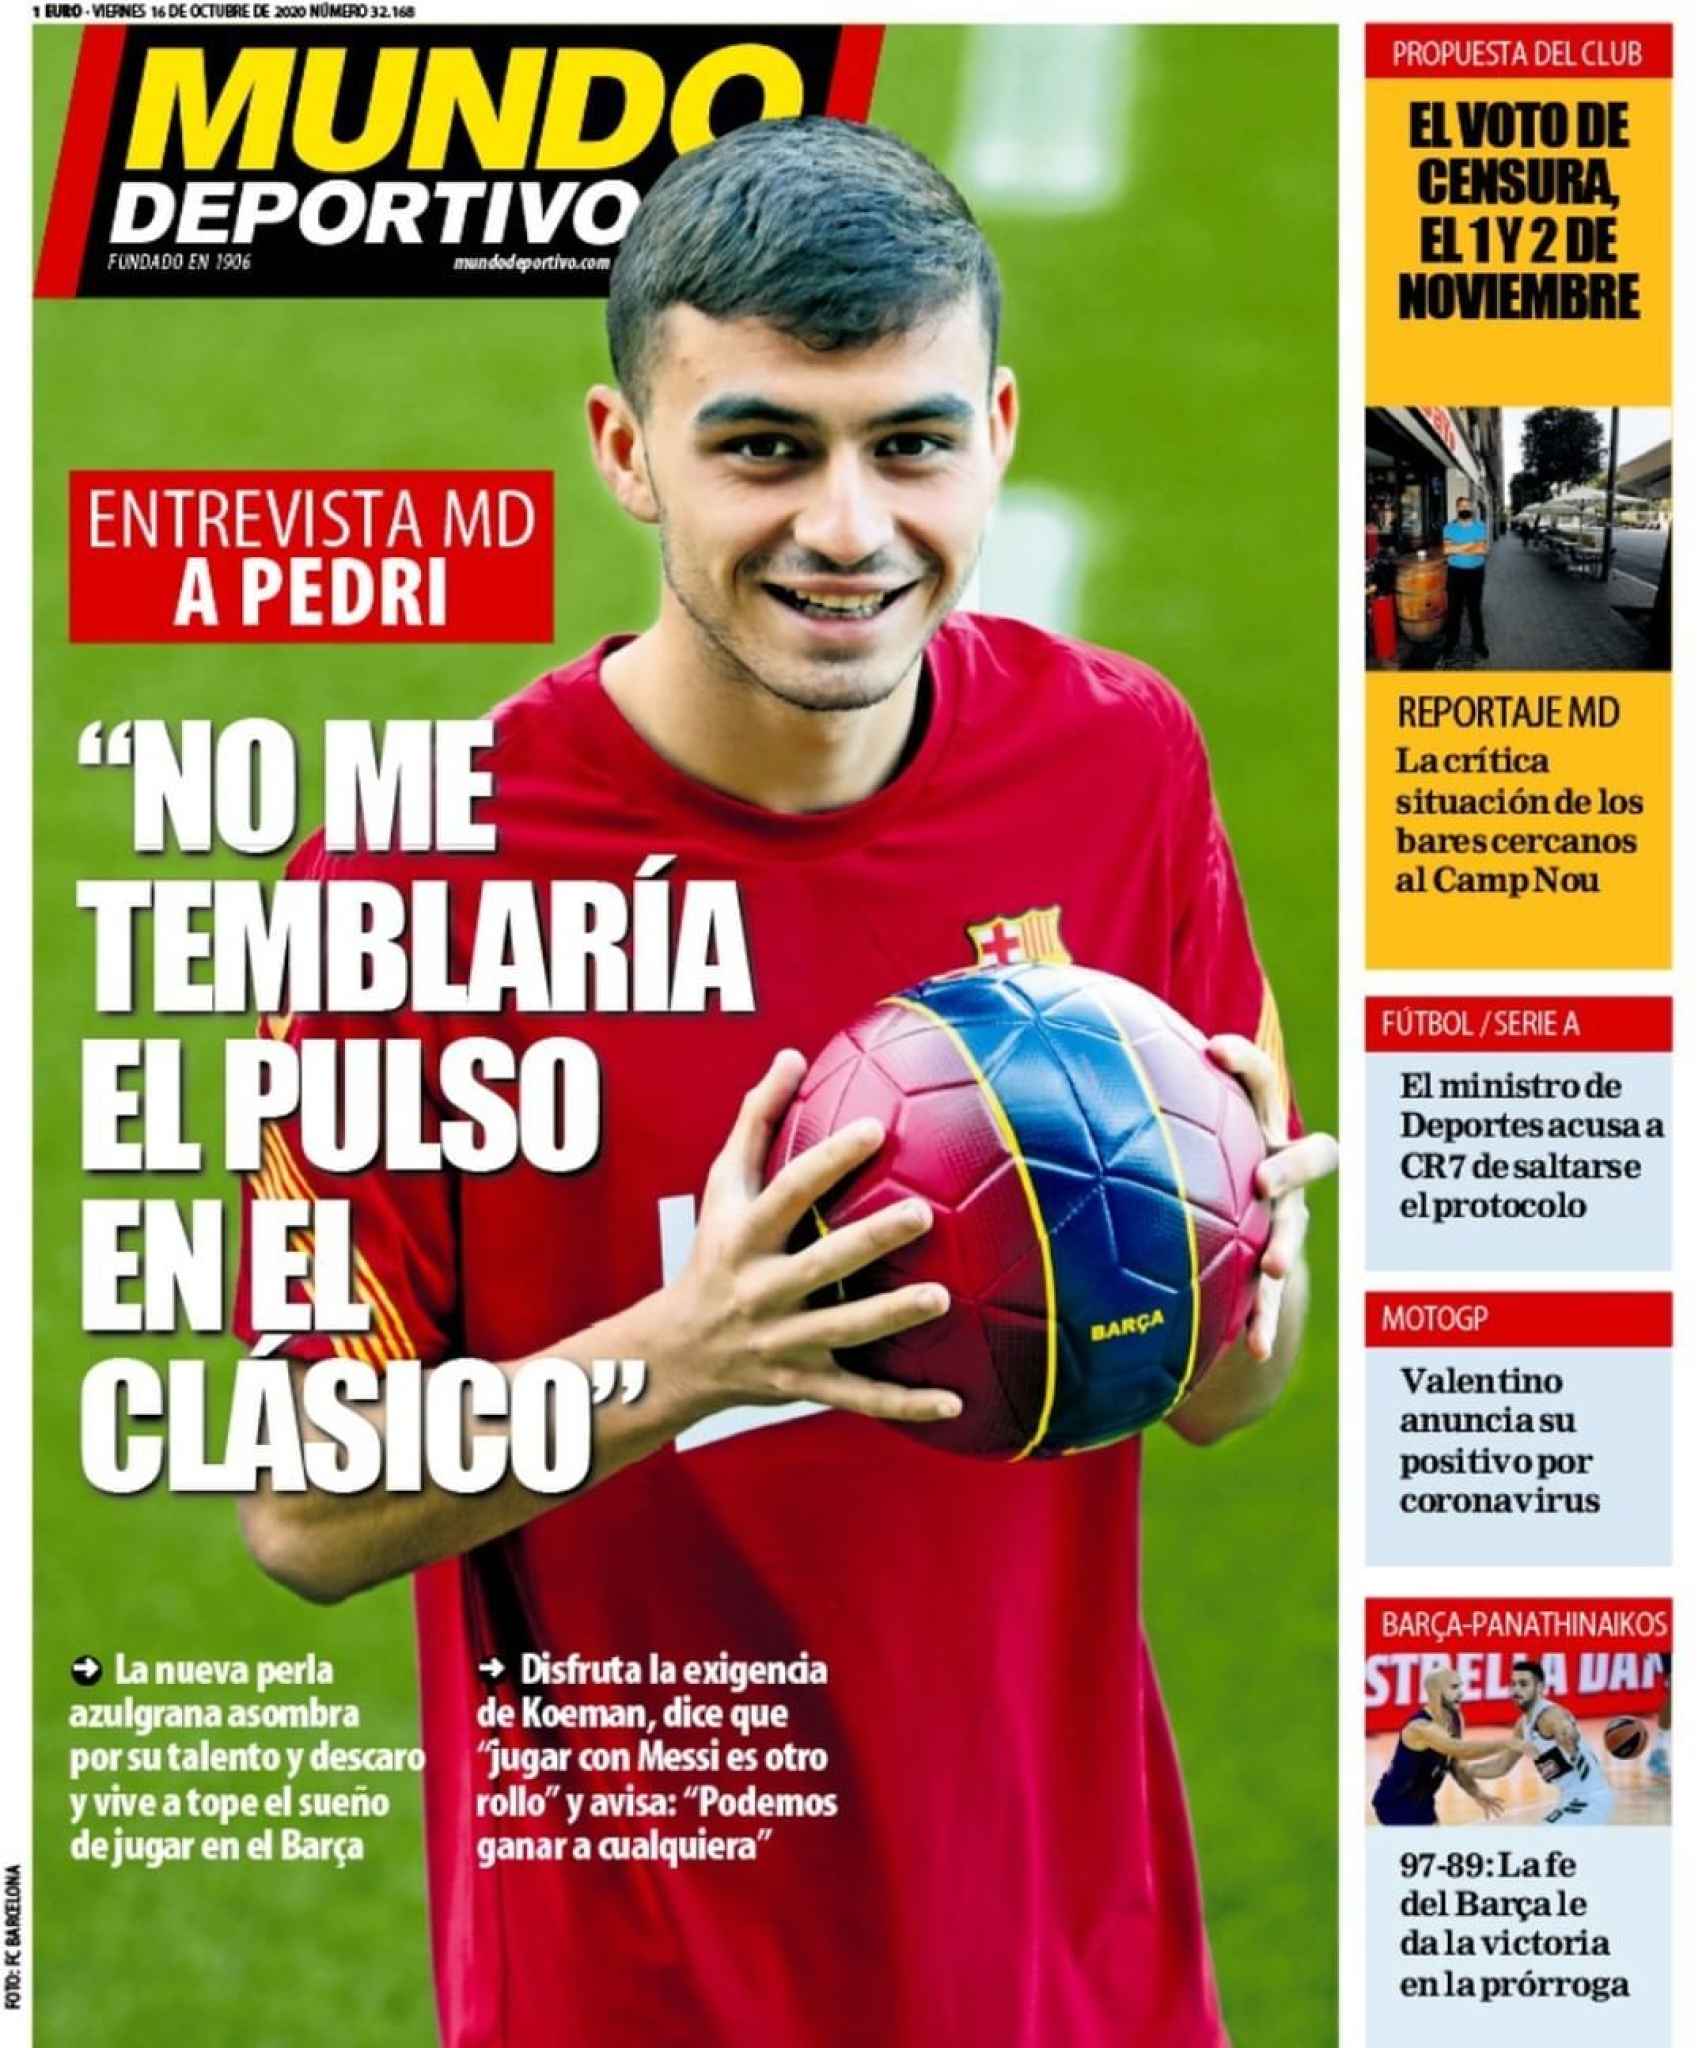 La portada del diario Mundo Deportivo (16/10/2020)